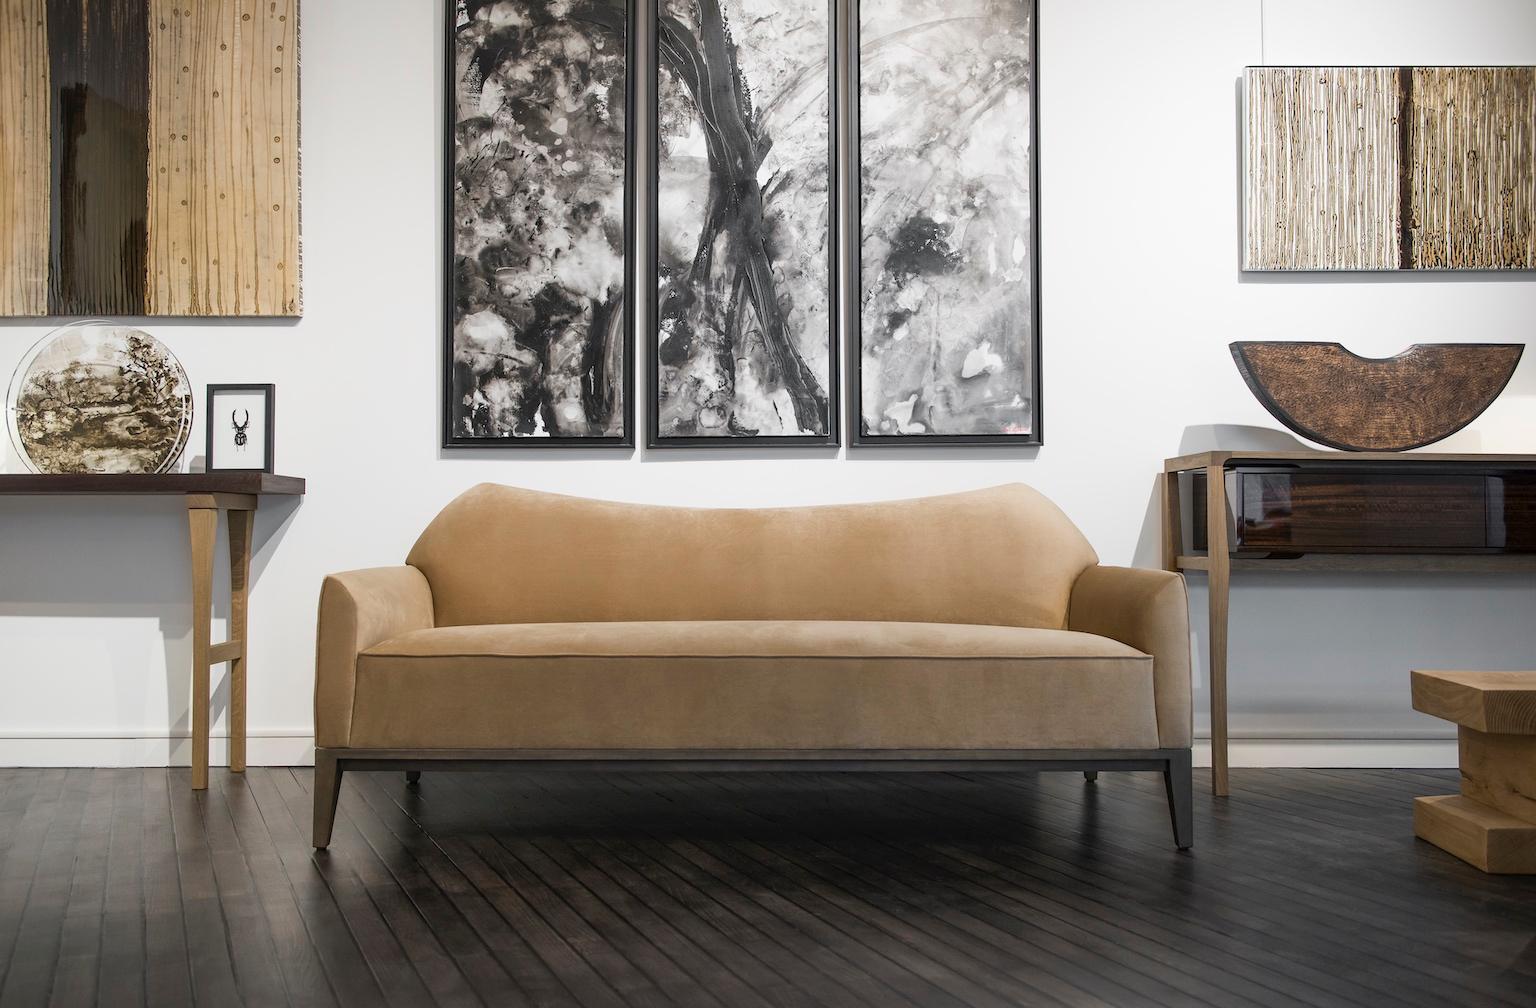 Le canapé Jade a été conçu en 2014 par le collectif Atelier Linné. C'est un canapé d'accueil qui peut être commandé en confort ferme ou moelleux.
La base est en hêtre teinté. Il existe en deux tailles standard, recouvert de velours disponible en 18